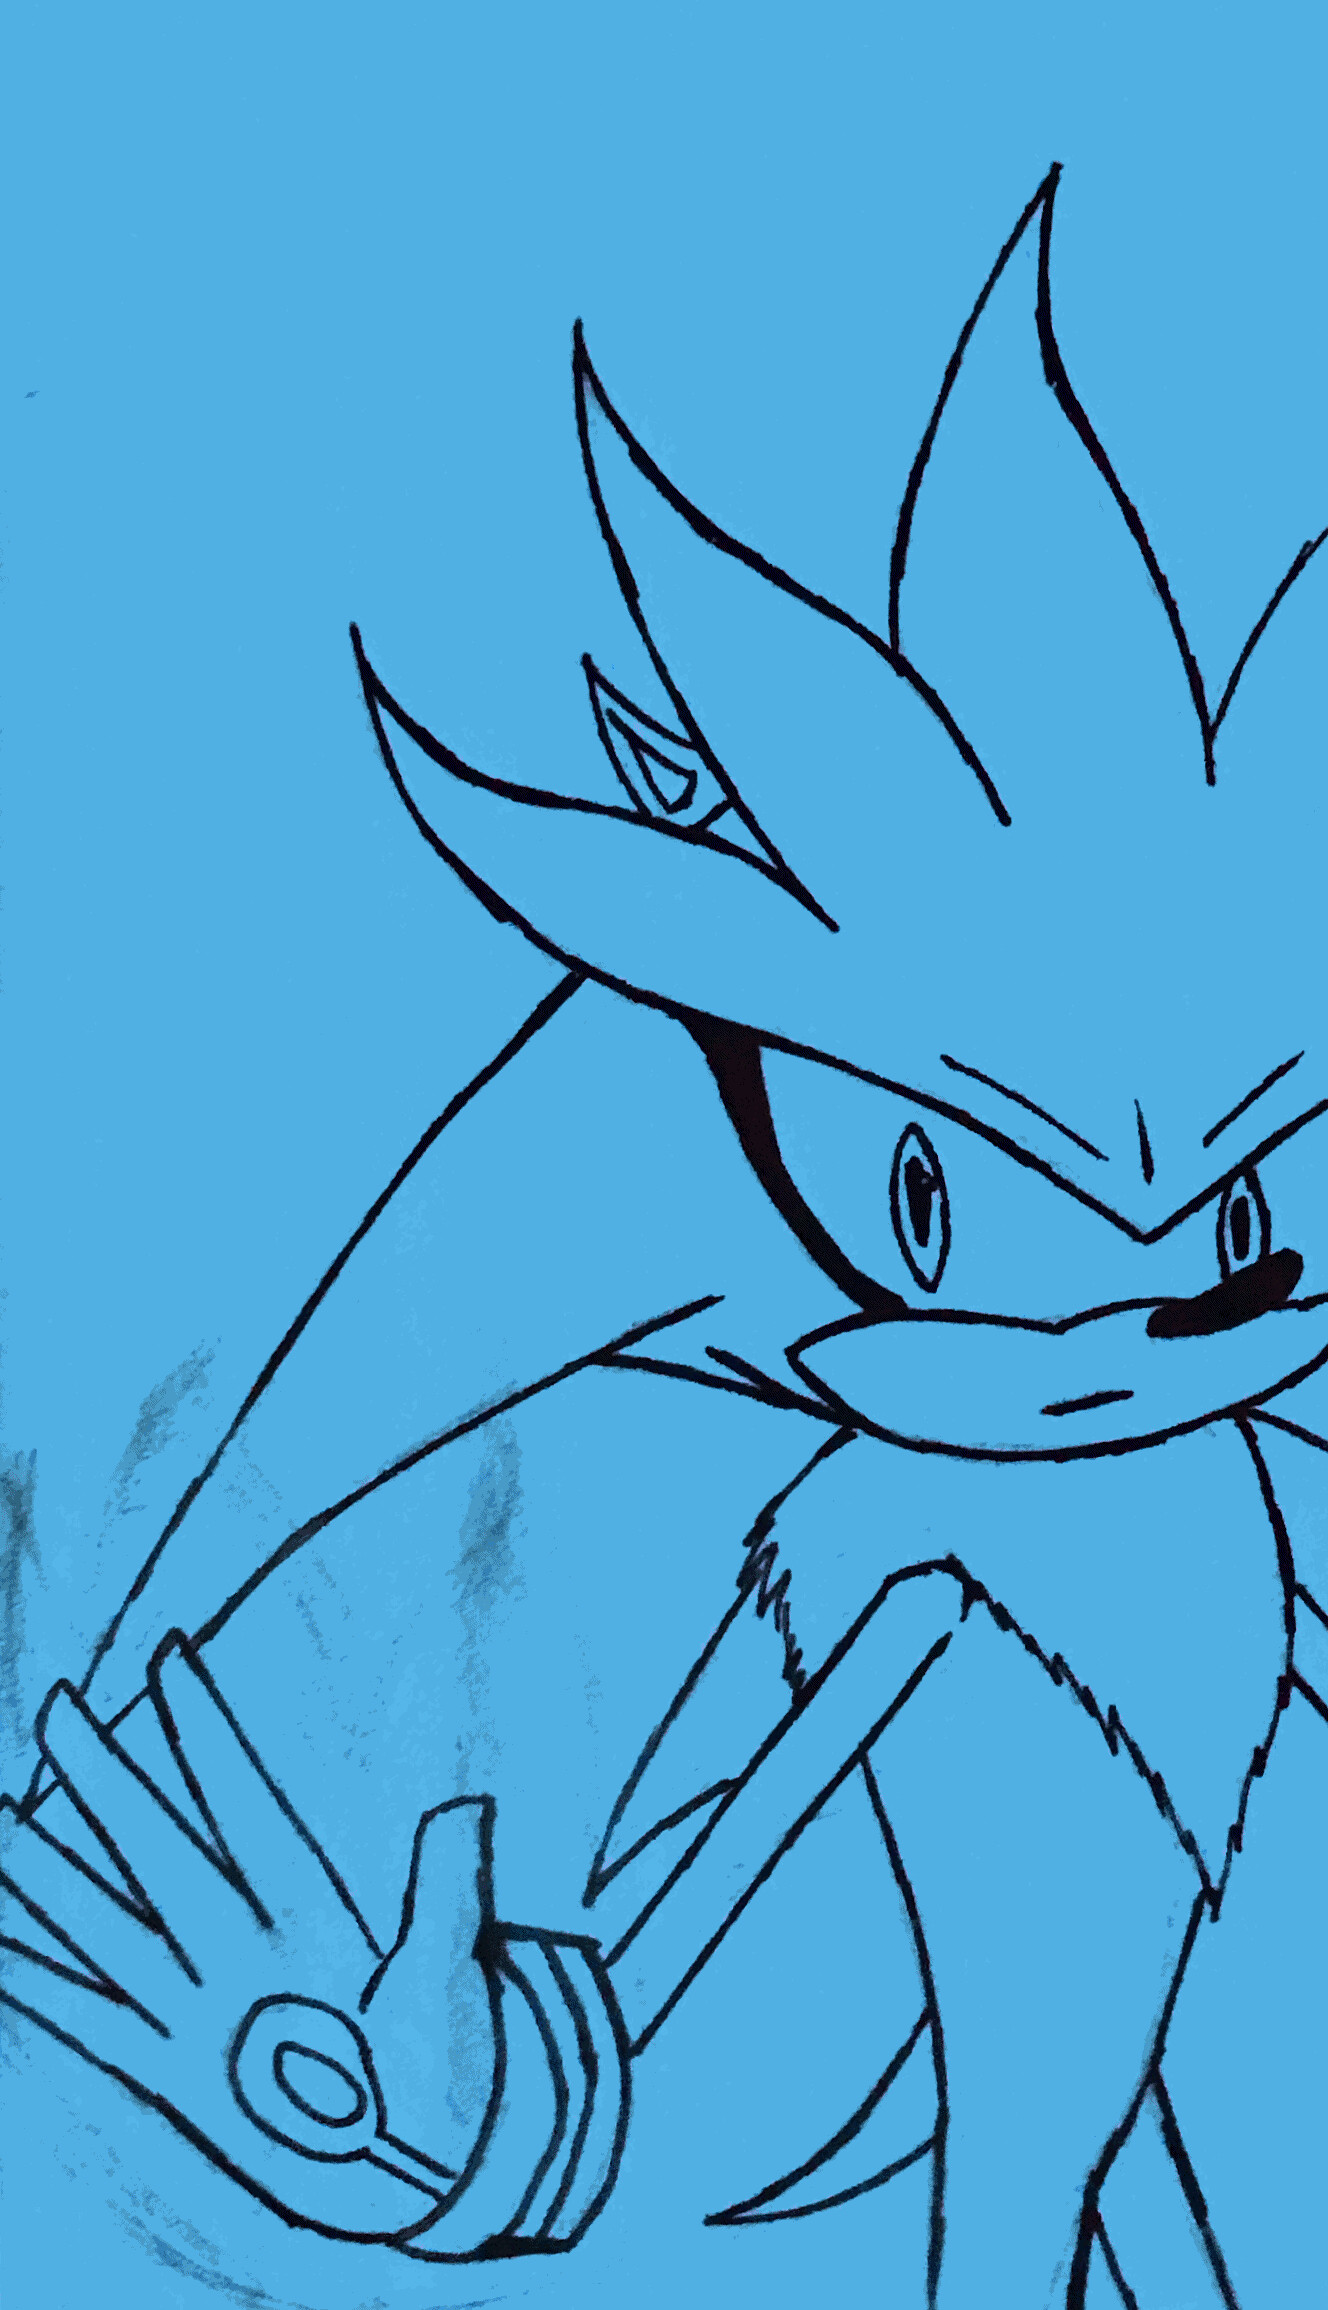 ArtStation - Shadow the Hedgehog (Sketch, outline and final result)